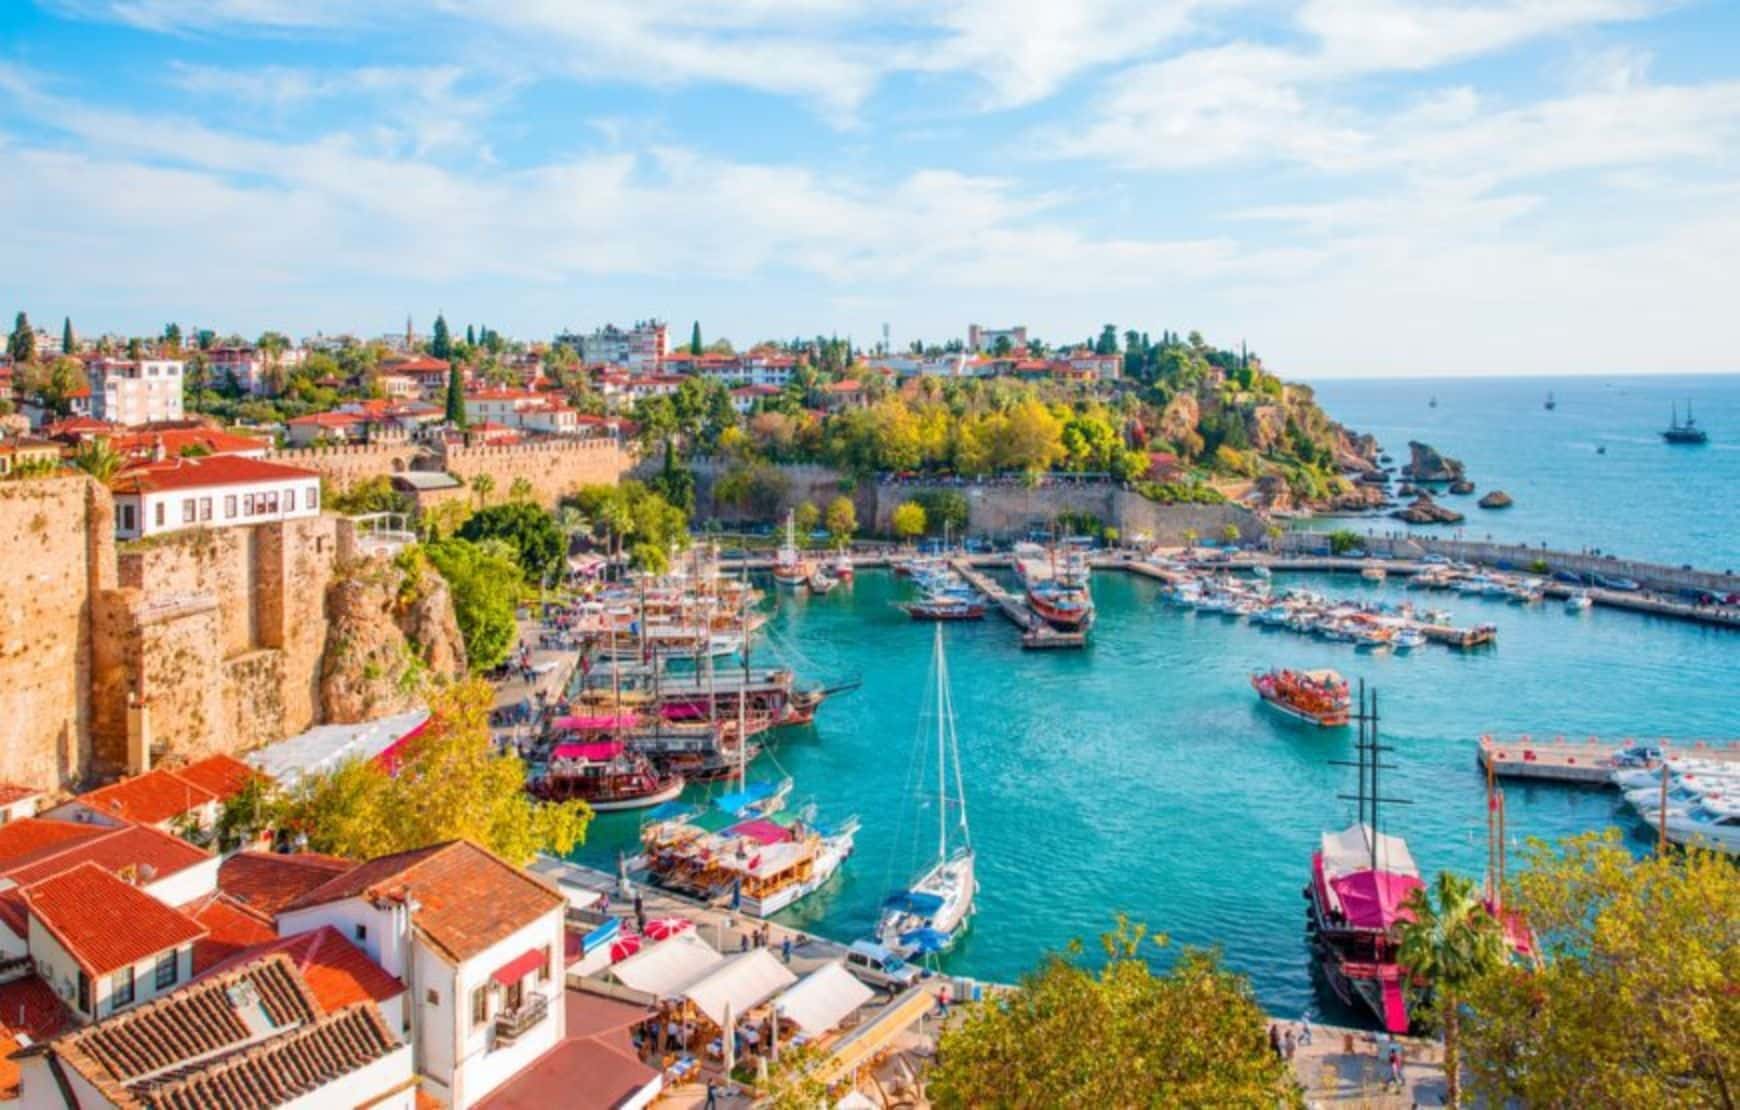 Antalya Kaleici Port